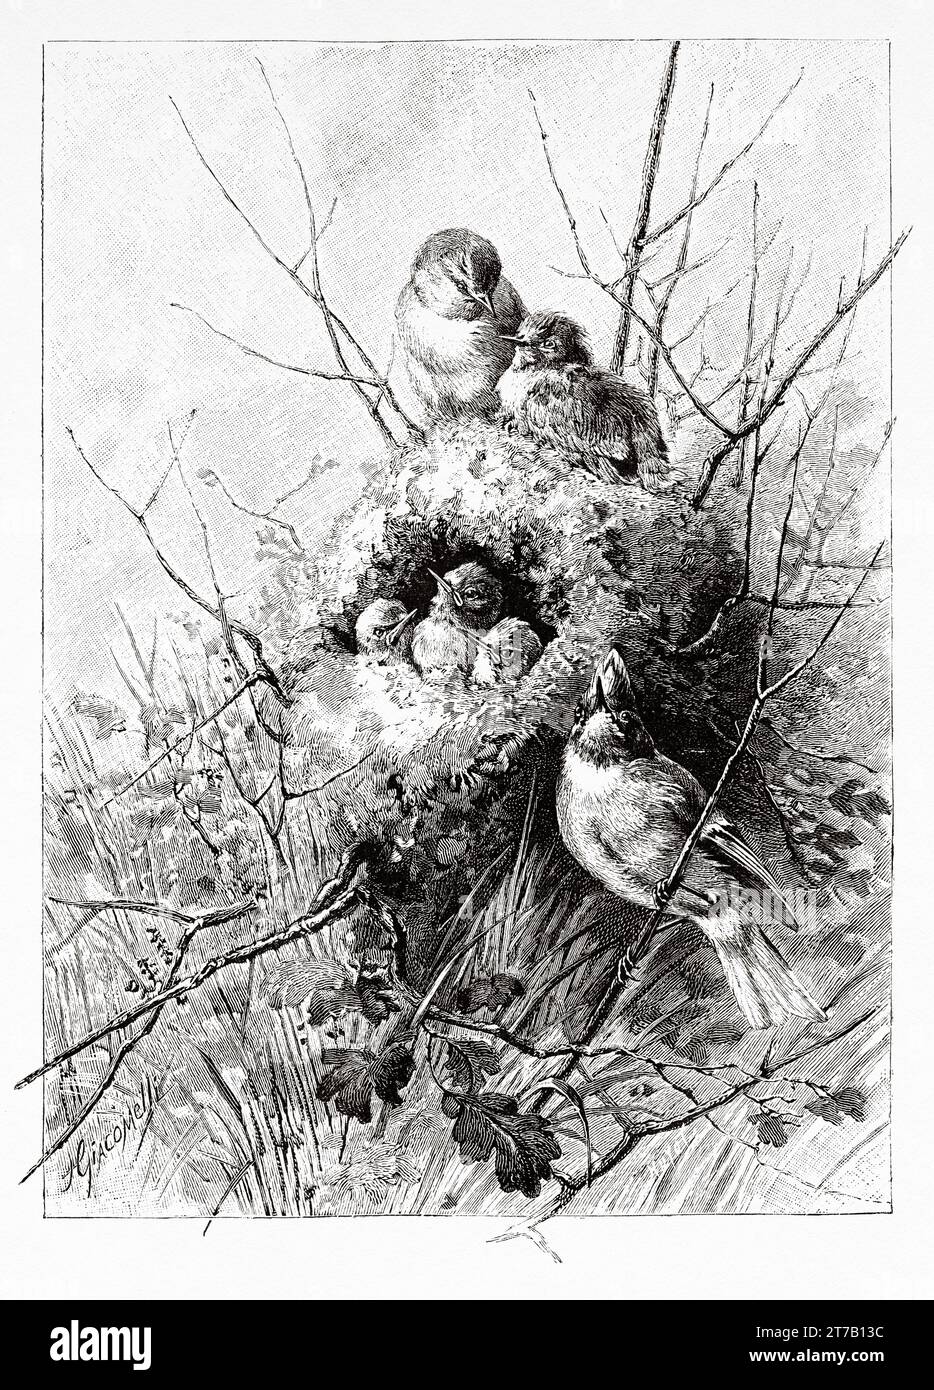 Nid de Wren eurasien (Troglodytes troglodytes) Vieille illustration de la nature 1887 Banque D'Images